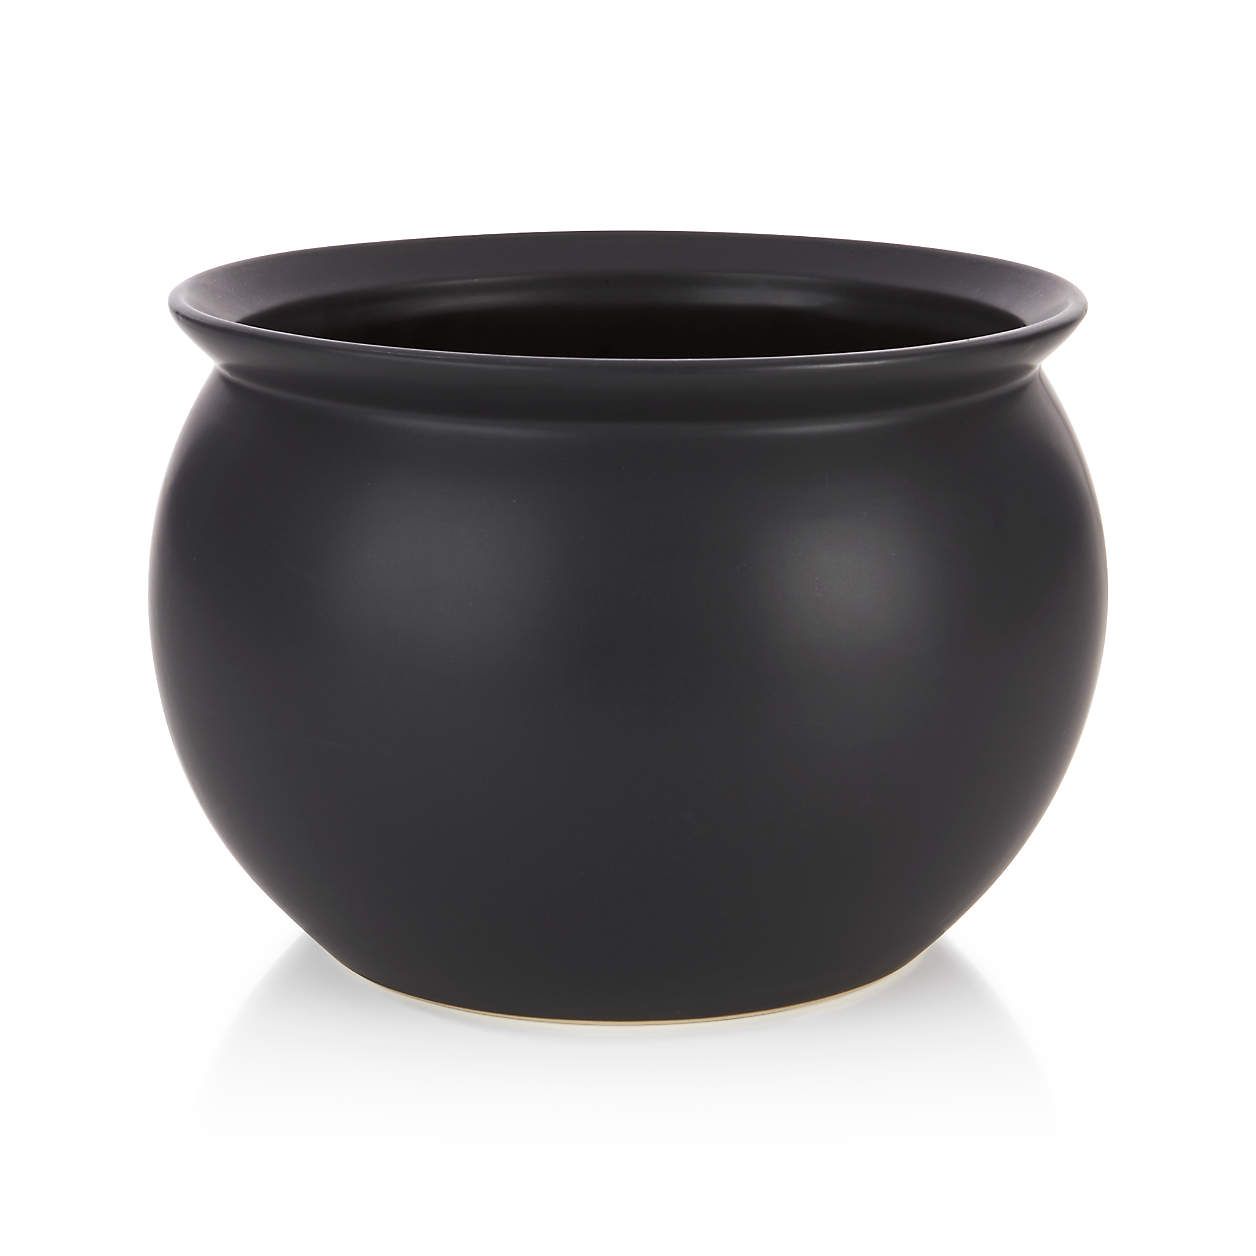 Cauldron Large Serving Bowl + Reviews | Crate & Barrel | Crate & Barrel